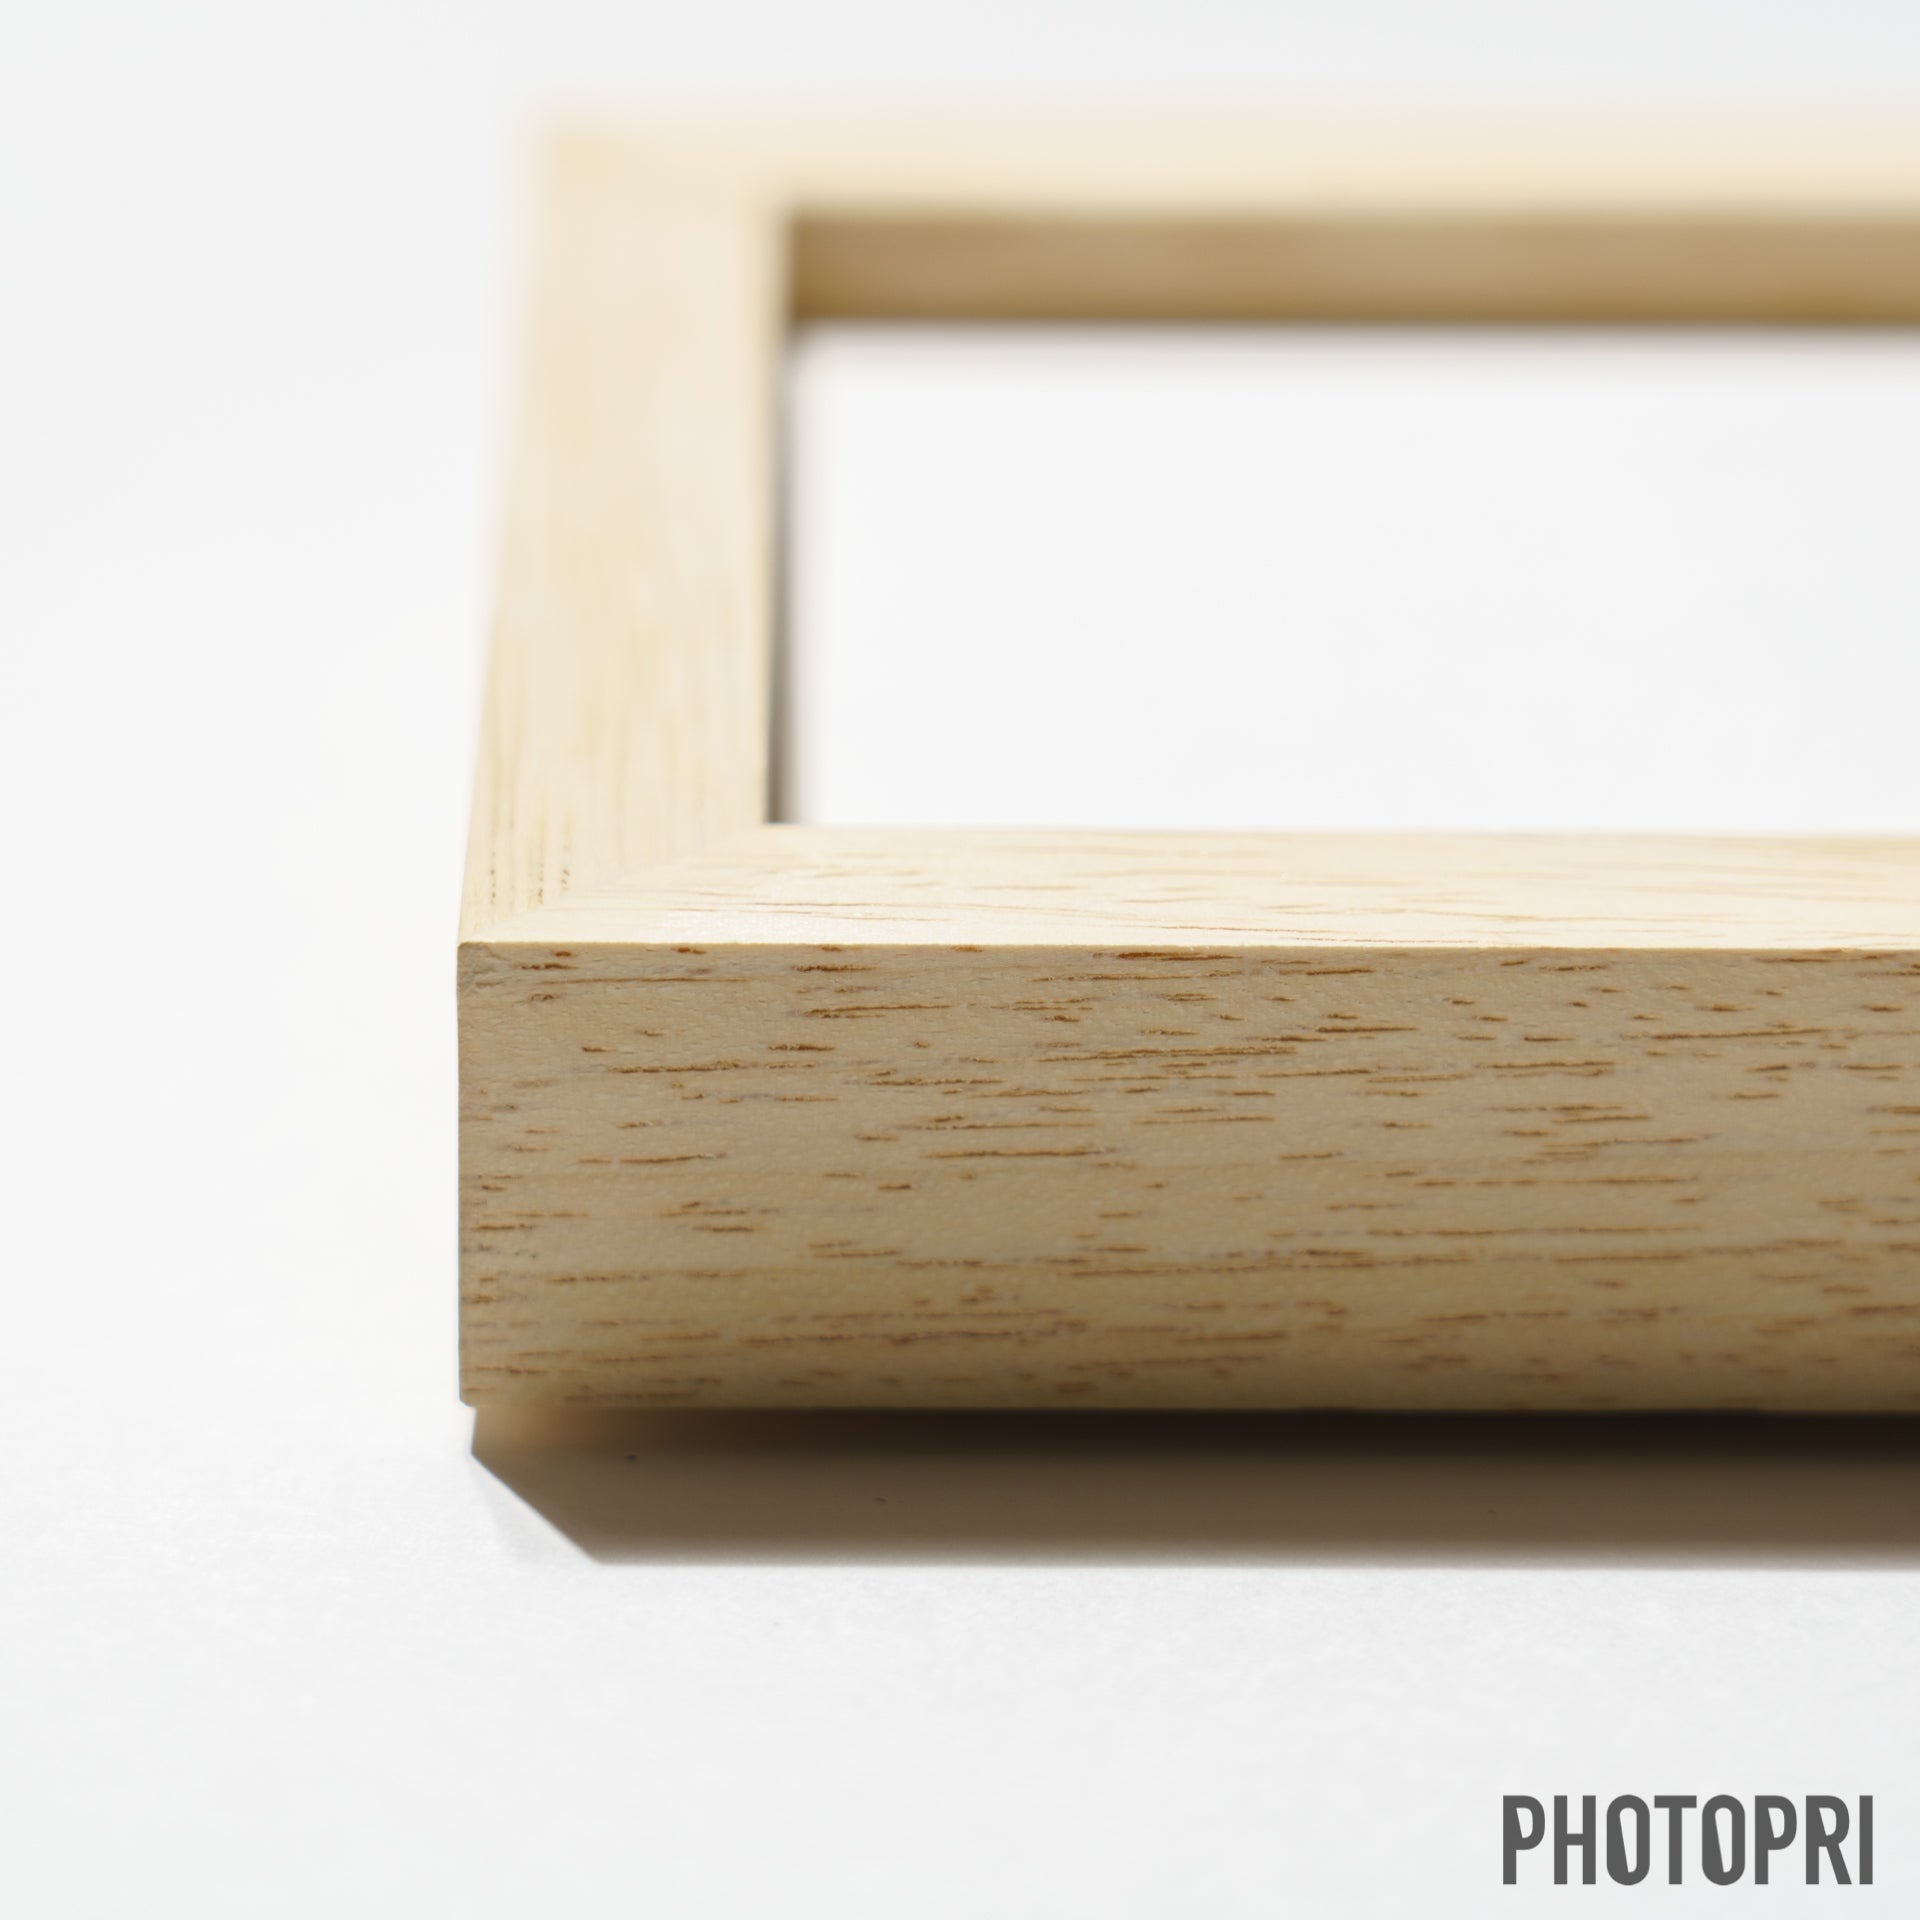 木製フレーム - PHOTOPRI【写真展・美術展品質のプリントサービス】